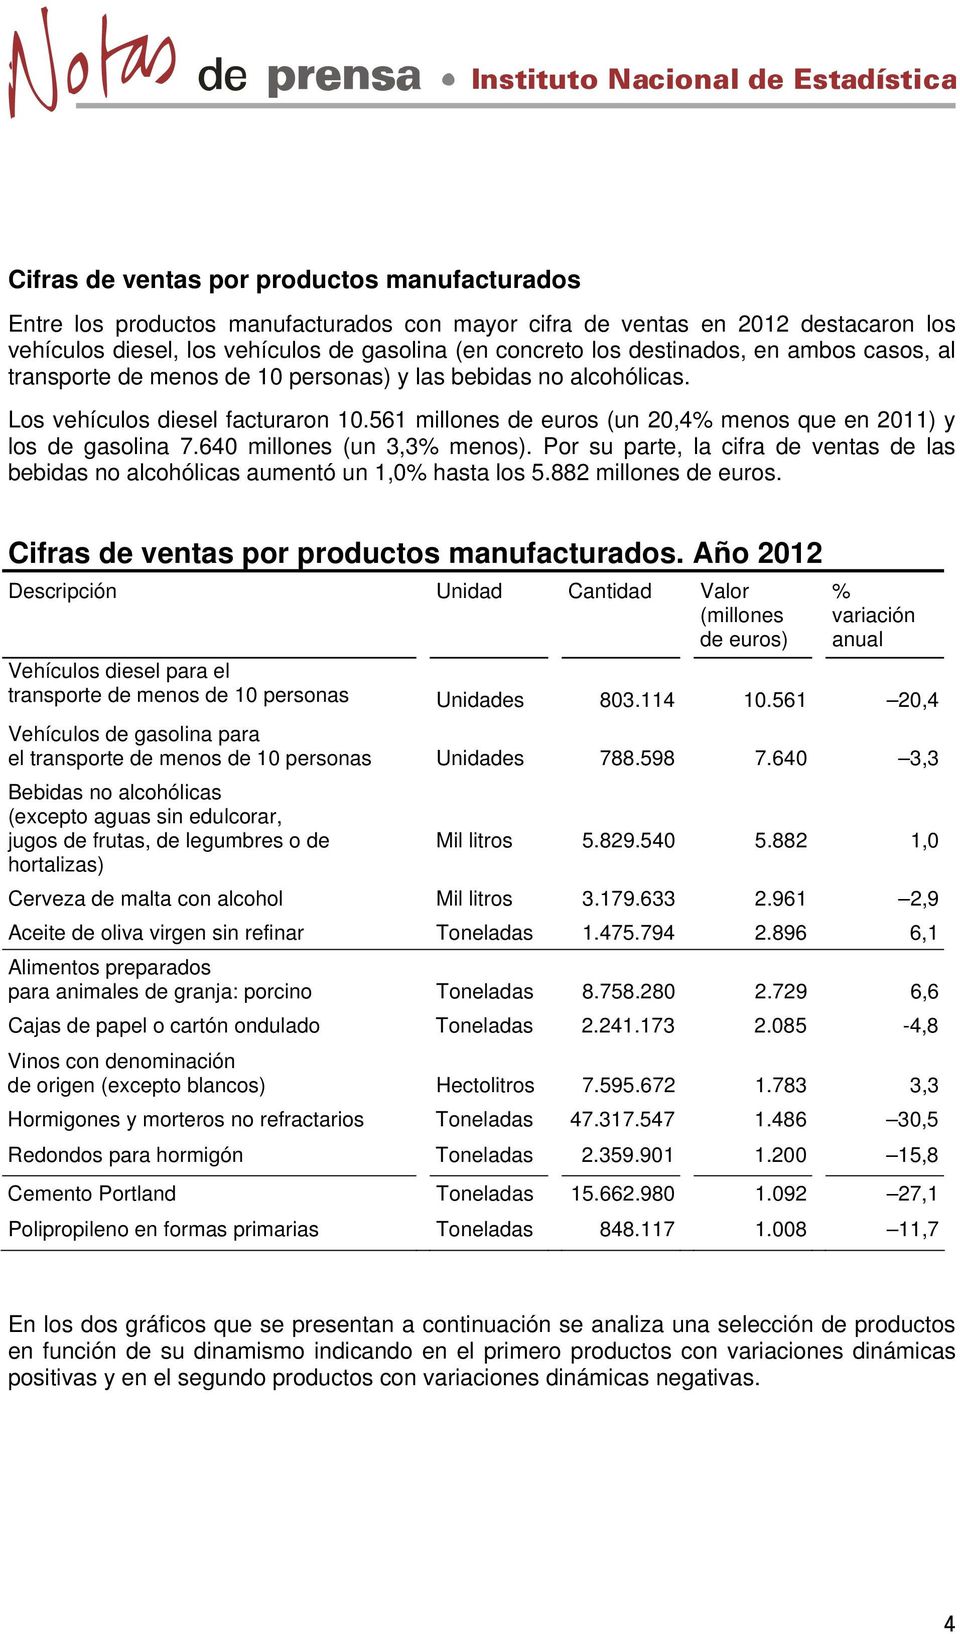 561 millones de euros (un 20,4% menos que en 2011) y los de gasolina 7.640 millones (un 3,3% menos). Por su parte, la cifra de ventas de las bebidas no alcohólicas aumentó un 1,0% hasta los 5.